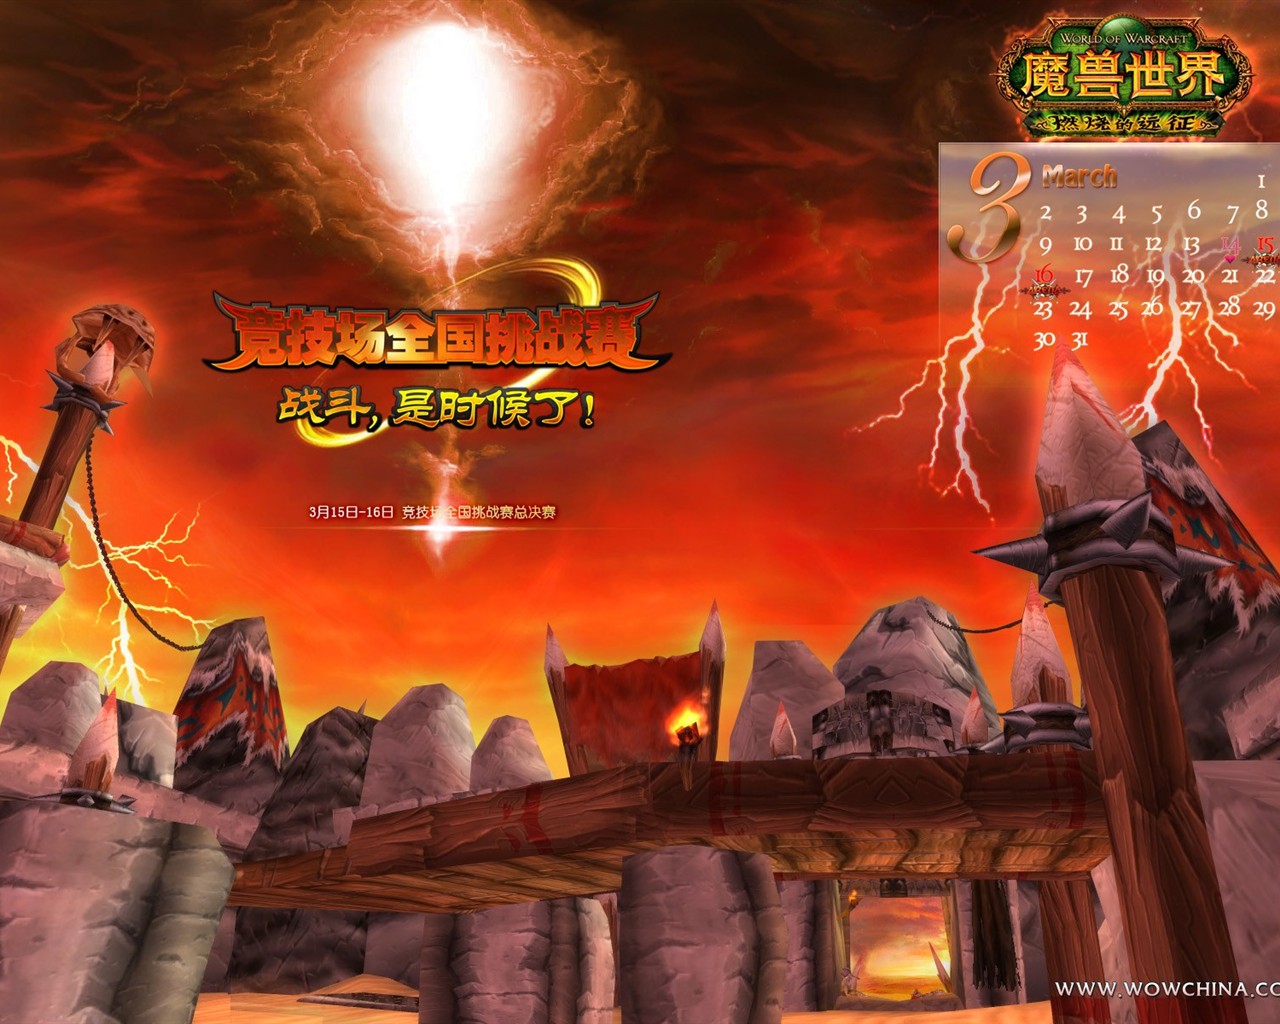 Мир Warcraft: официальные обои The Burning Crusade в (2) #16 - 1280x1024